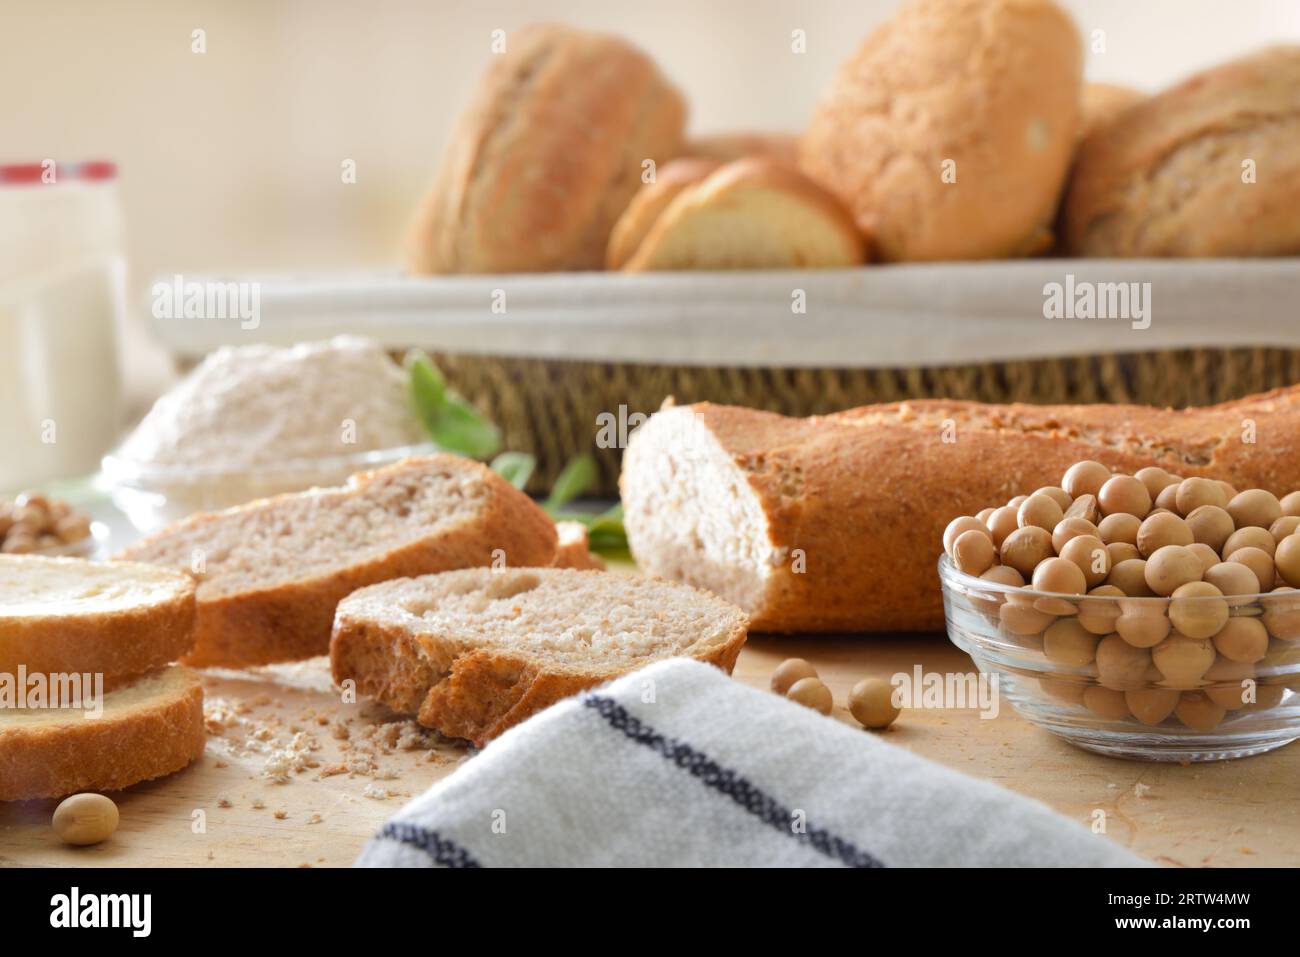 Sojabrot in Scheiben und Sojabohnen auf einem Schneidebrett mit Mehl und Brot in einem Korb im Hintergrund. Vorderansicht. Stockfoto